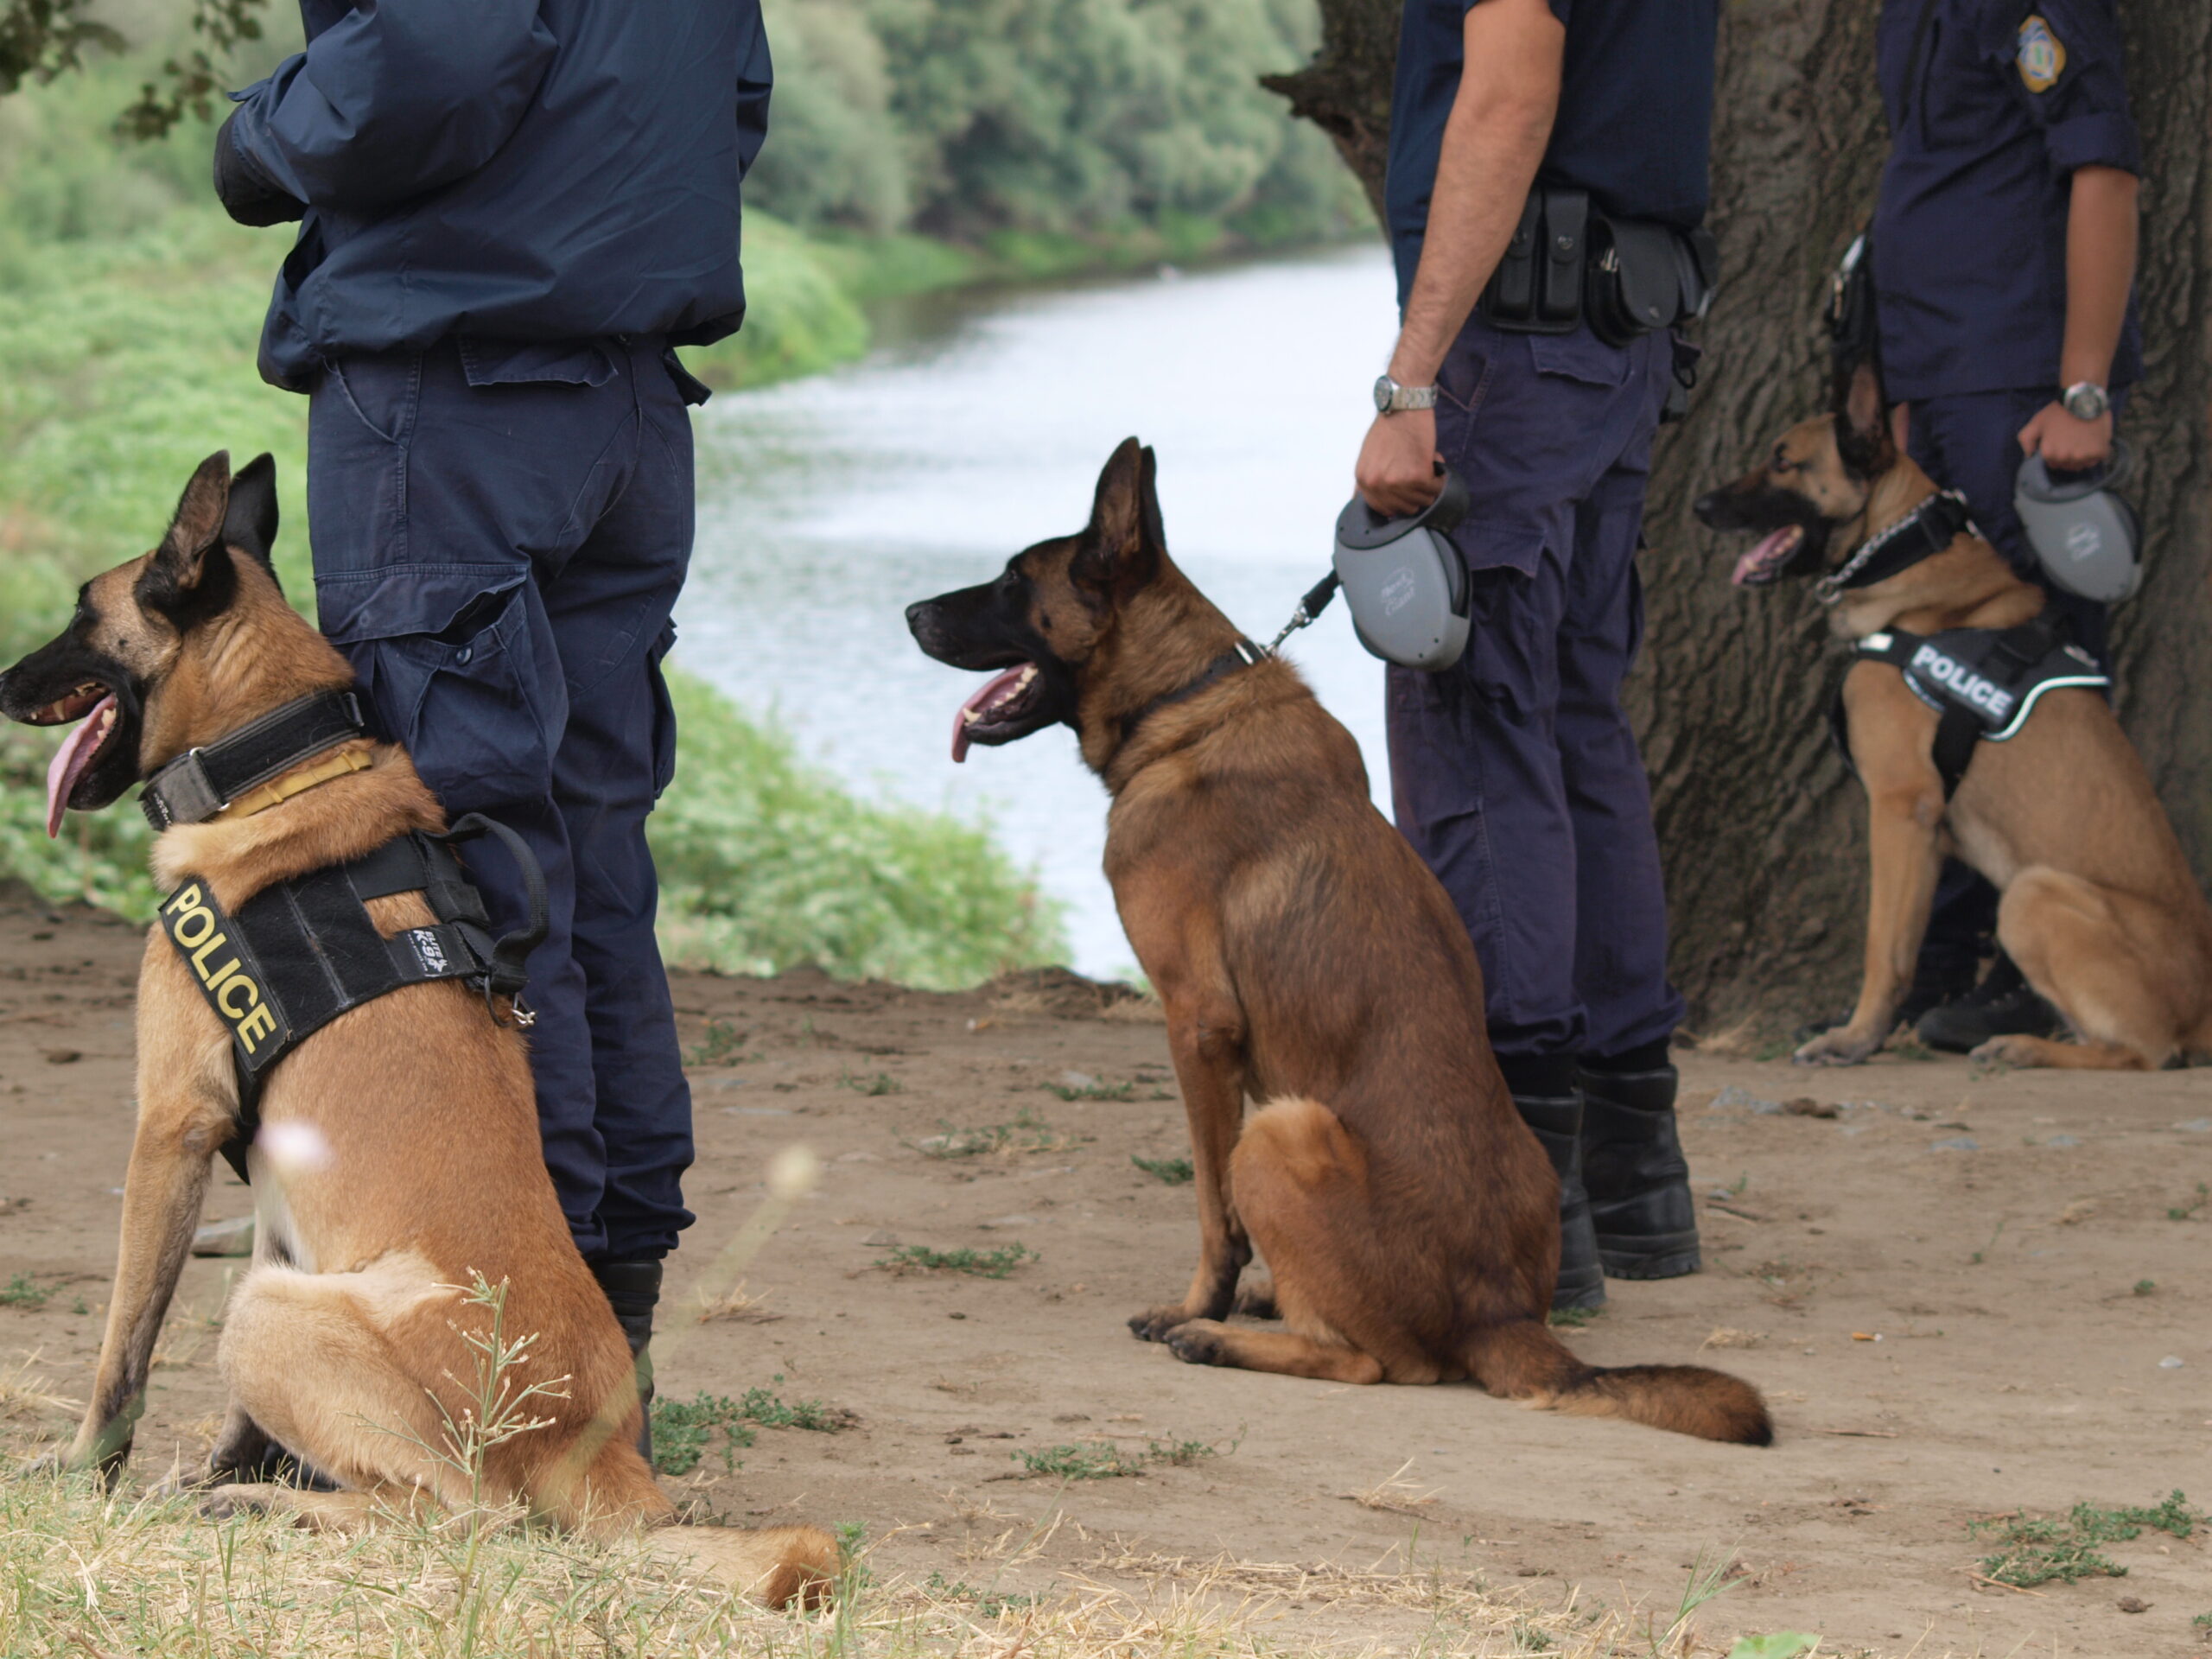 Αργολίδα: 3 συλλήψεις για όπλα, προϊόντα «μαϊμού» και ναρκωτικά – Συνδρομή αστυνομικού σκύλου